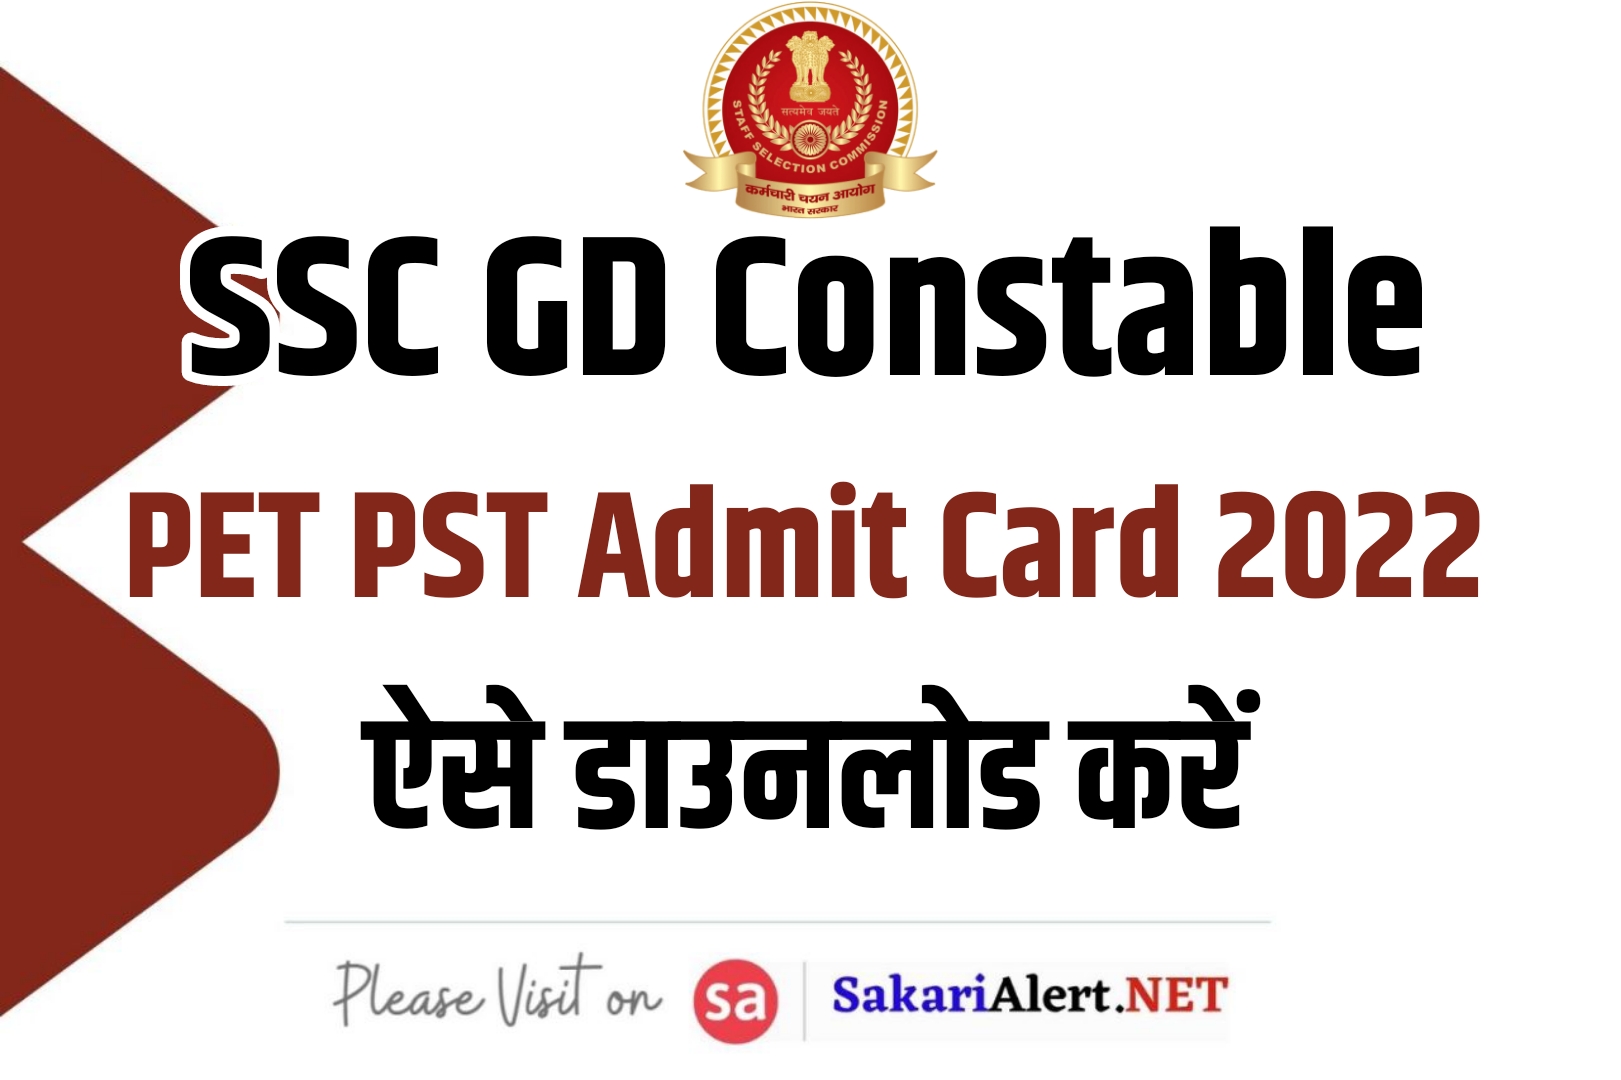 SSC GD Constable PET PST Admit Card 2022